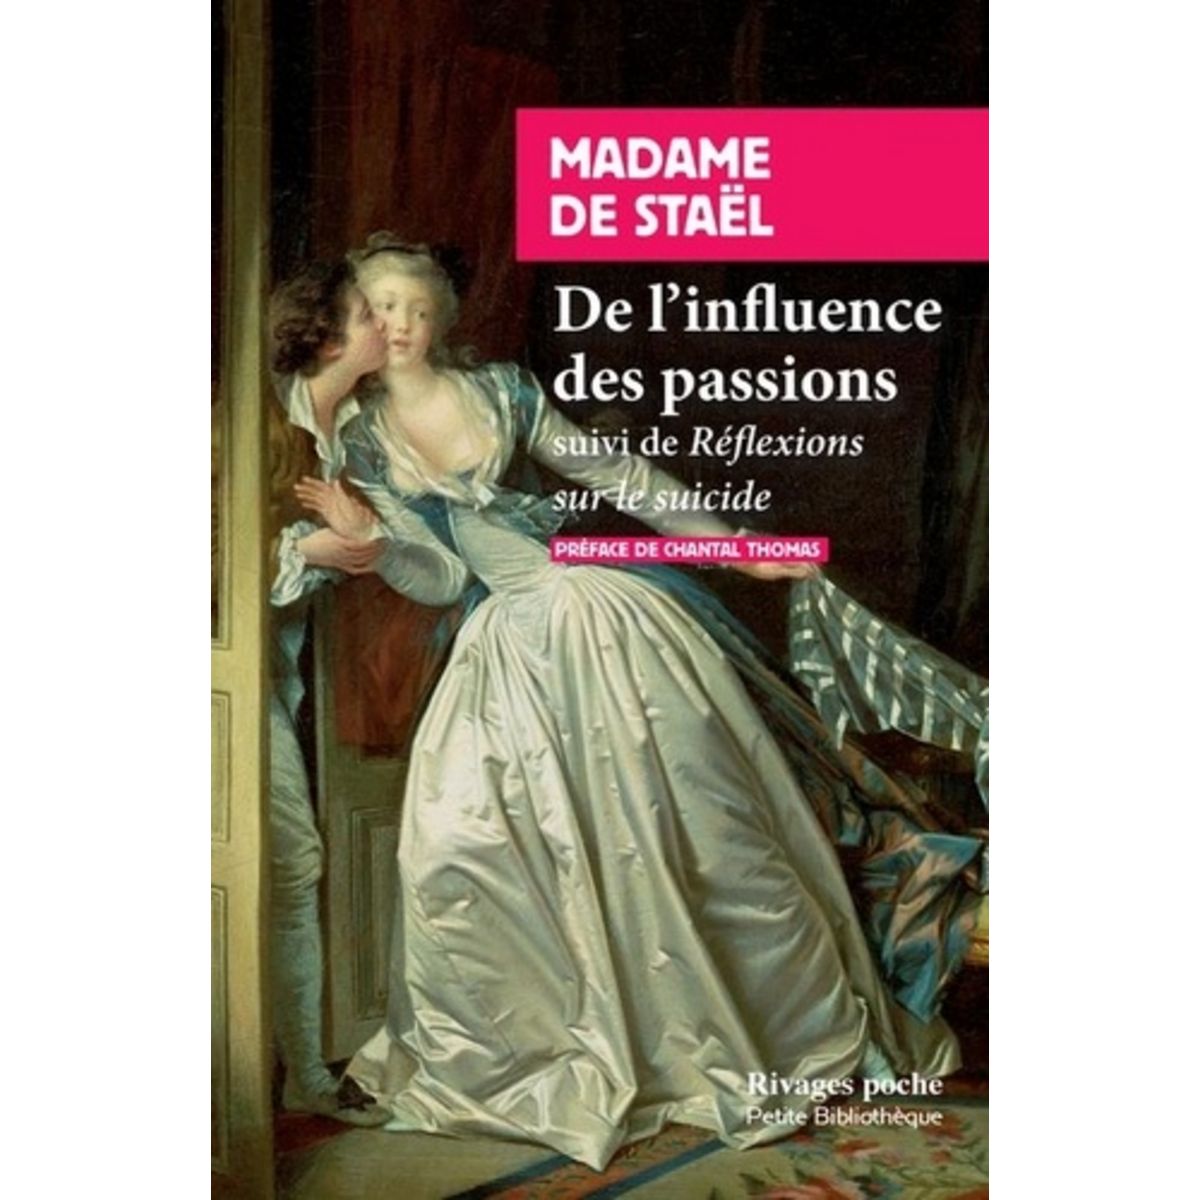  DE L'INFLUENCE DES PASSIONS. SUIVI DE REFLEXIONS SUR LE SUICIDE, Madame de Staël